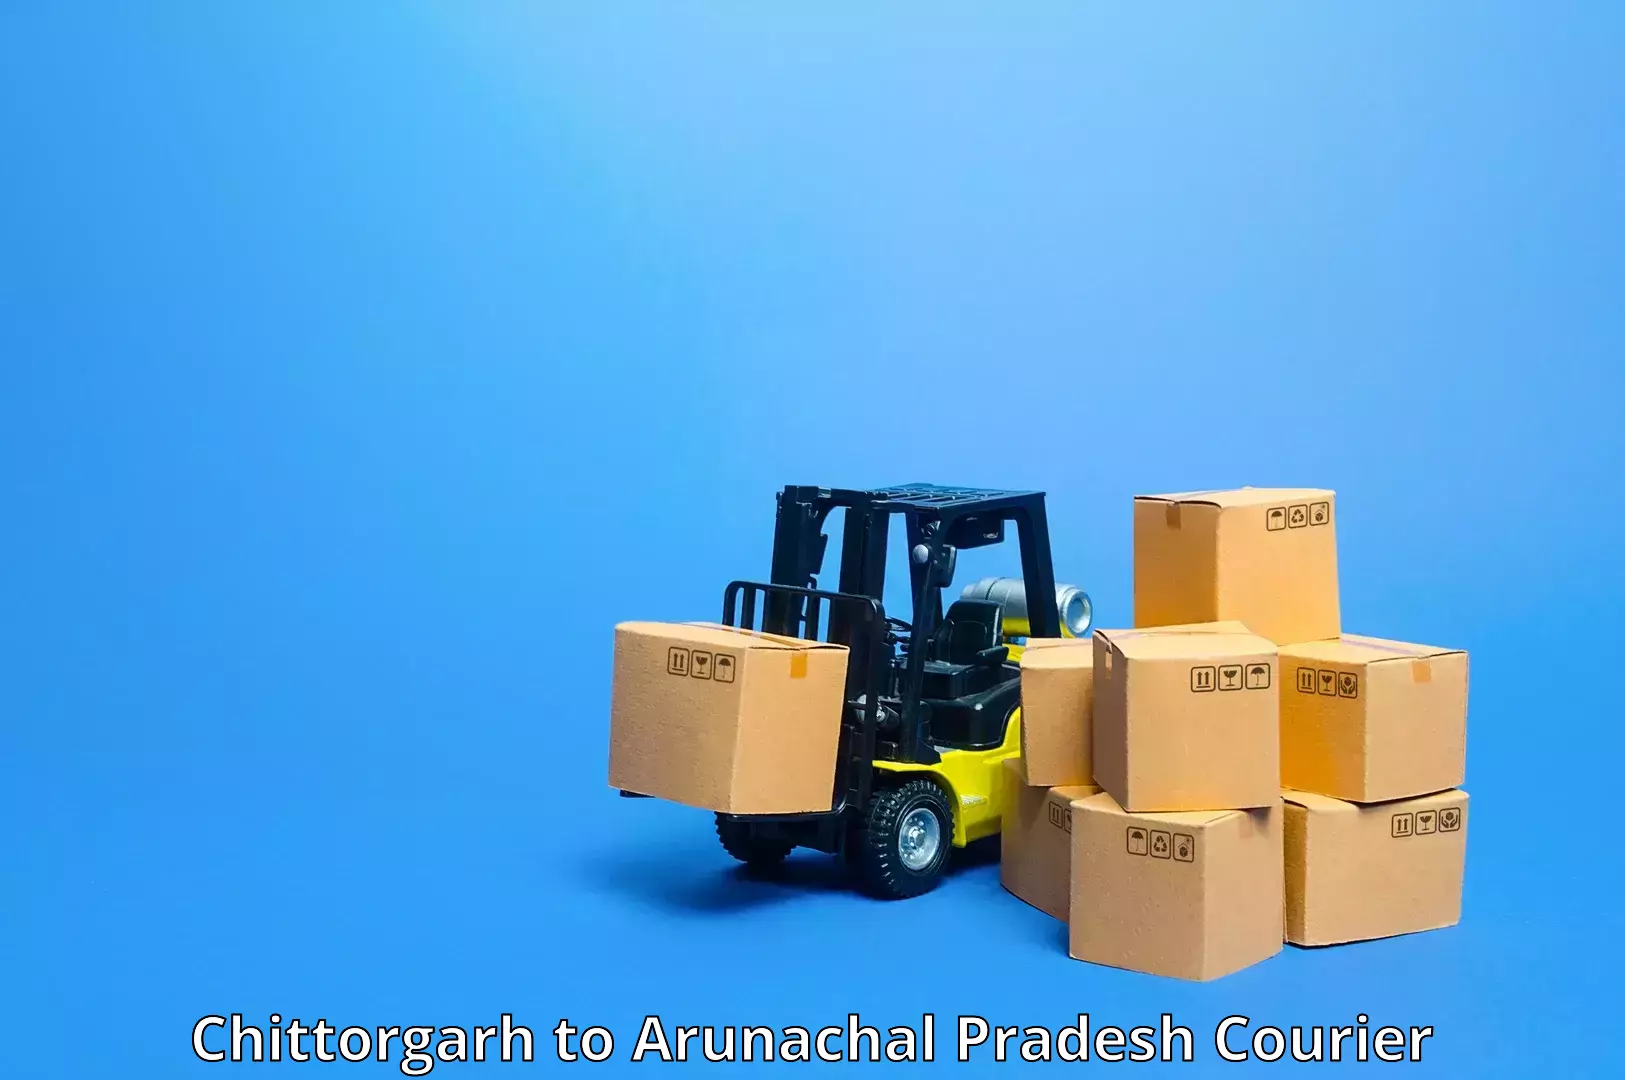 End-to-end delivery Chittorgarh to Arunachal Pradesh